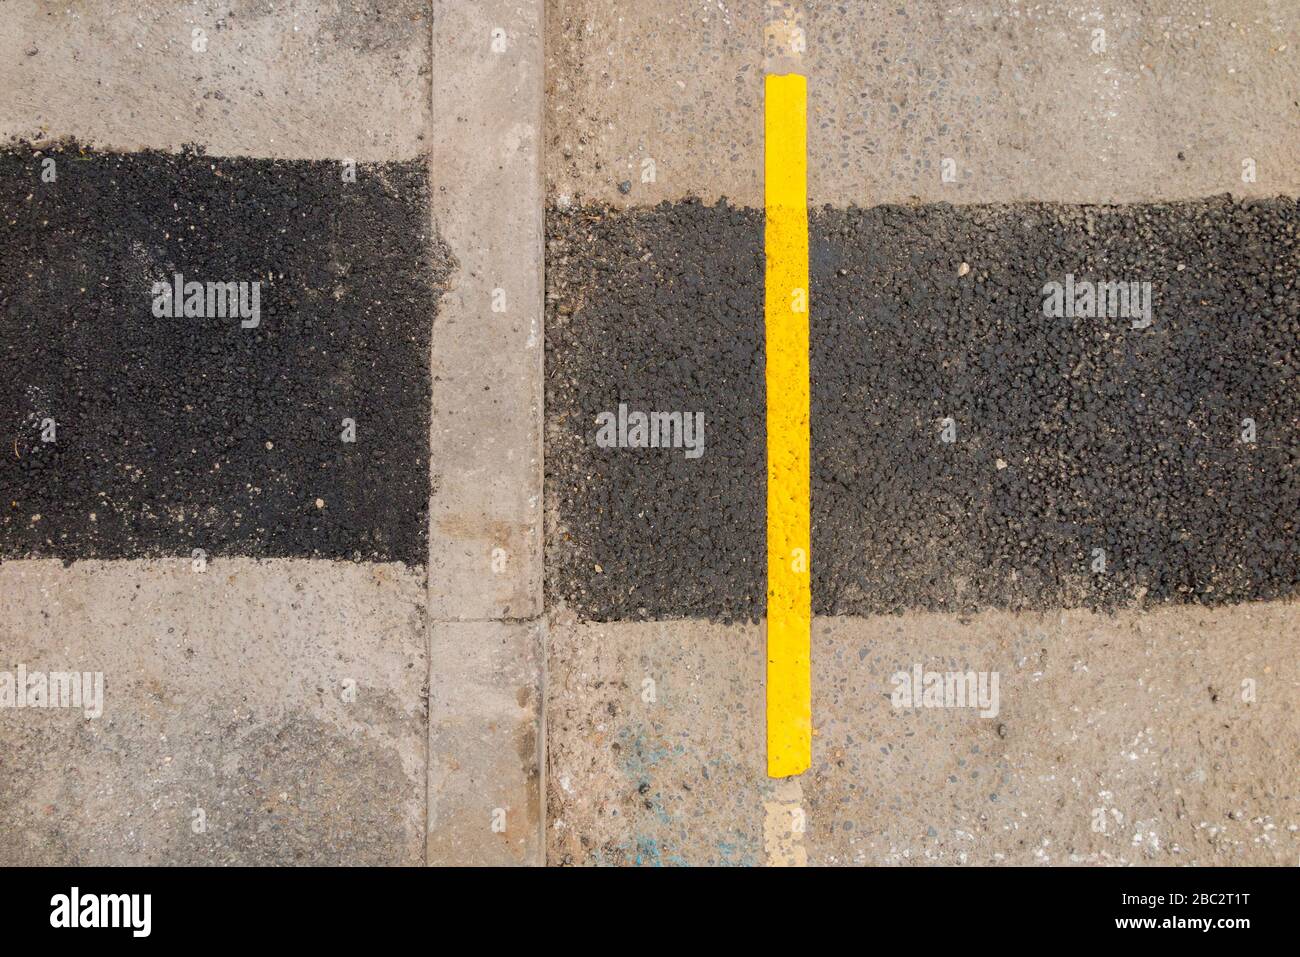 Eine sehr kurze Länge der neu lackierten Parksperrenbegrenzung der gelben Linie, bei der Straßenbauarbeiten die Oberfläche der Straßen in der Nähe der Bordsteinkante gestört haben. GROSSBRITANNIEN (116) Stockfoto